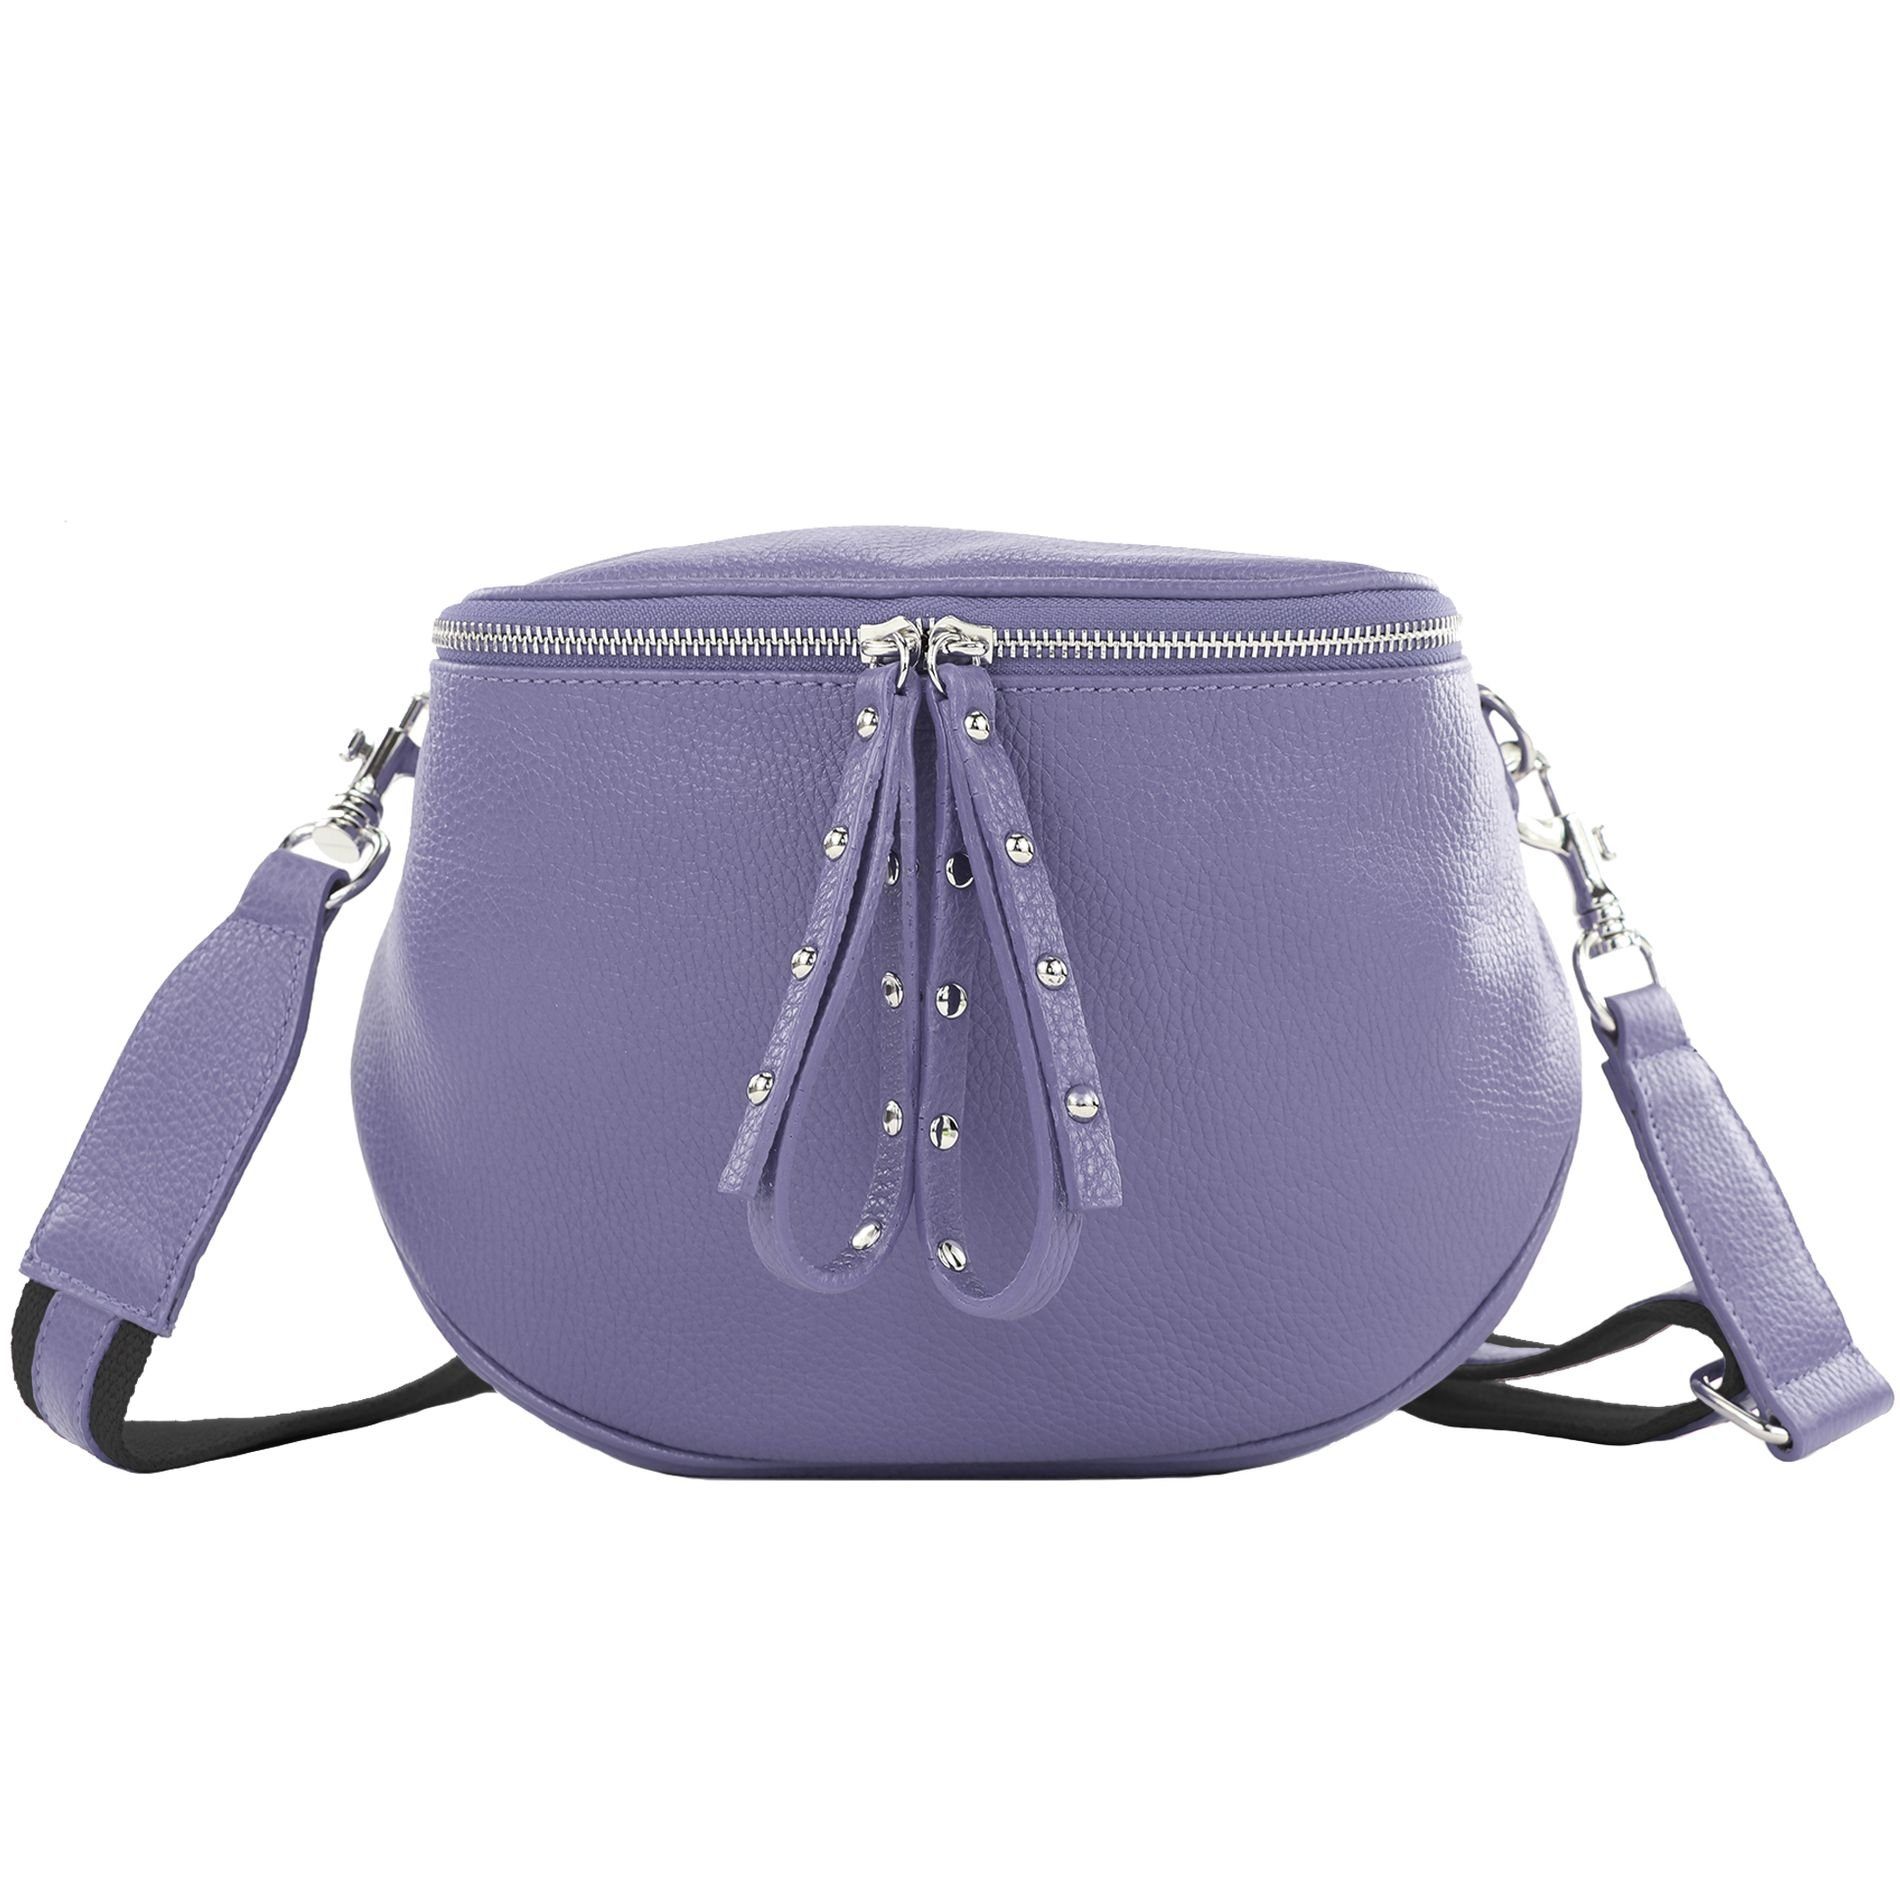 T236, Handmade Schultertasche de Echtleder Purple Italy modamoda in